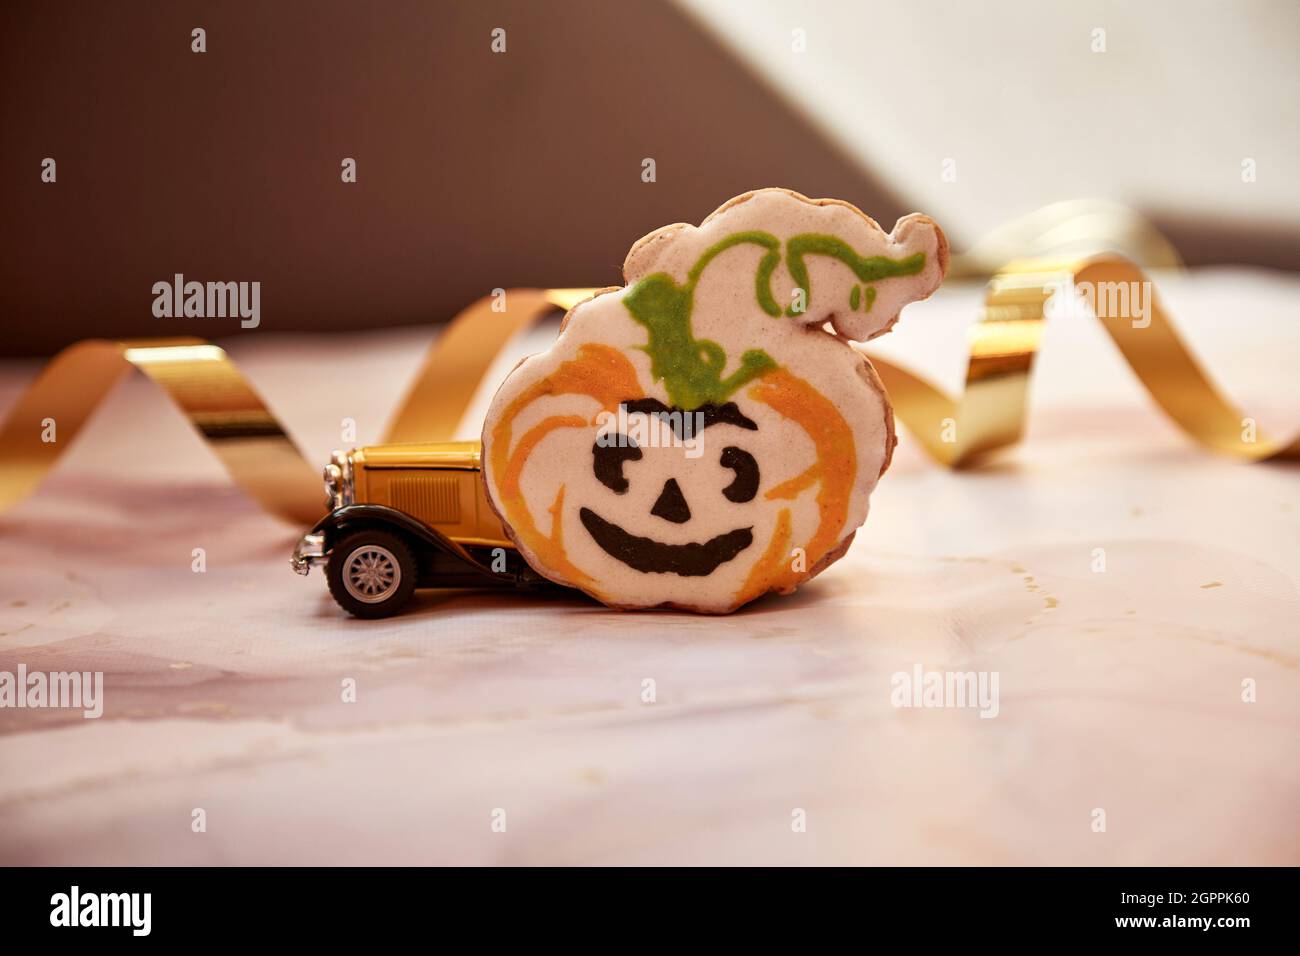 Halloween decora con tazza di zucca arancione, biscotti fatti a mano, zucche feltrate e auto retrò gialla. Felice Halloween concetto festivo. Foto di alta qualità. Foto Stock